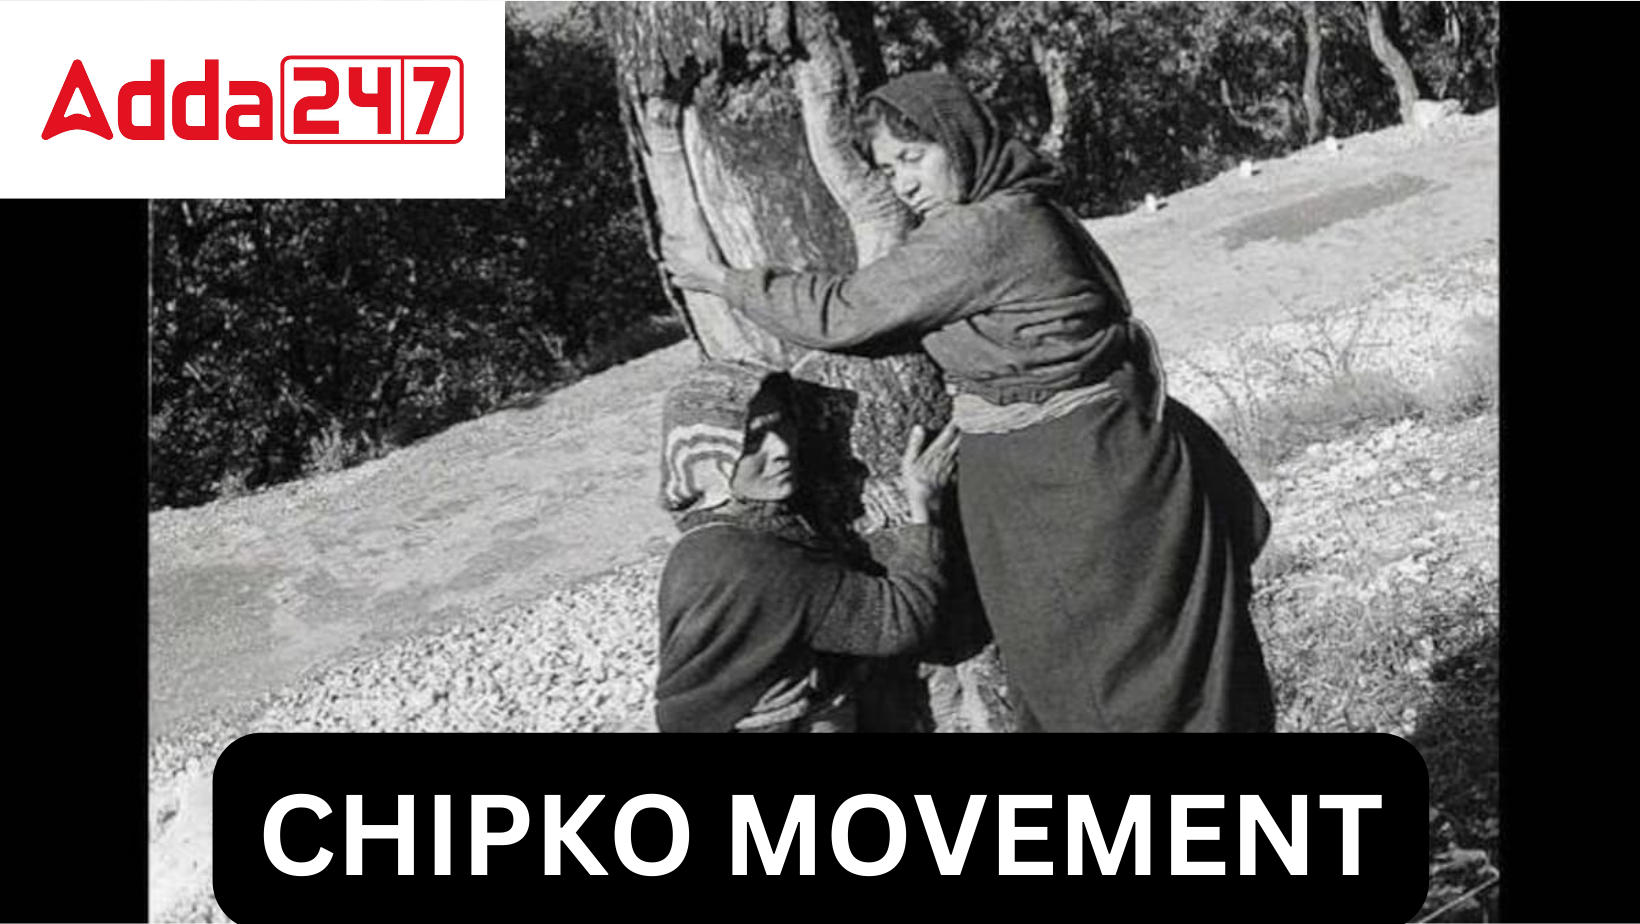 CHIPKO MOVEMENT